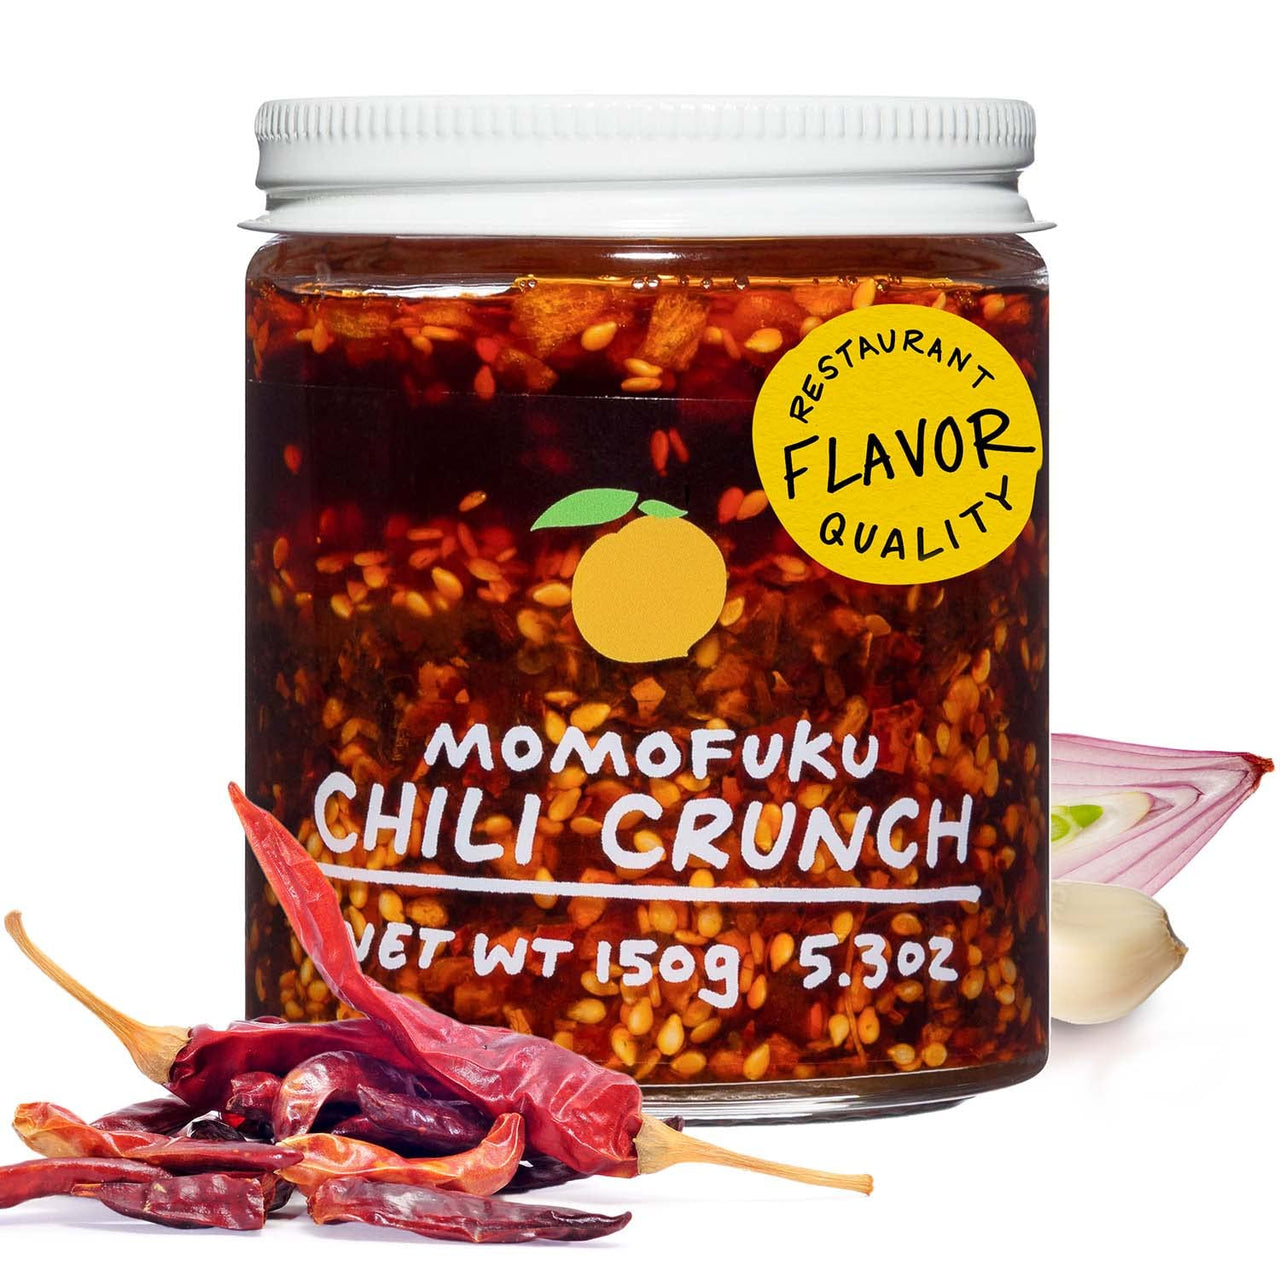 OG Chili Crunch